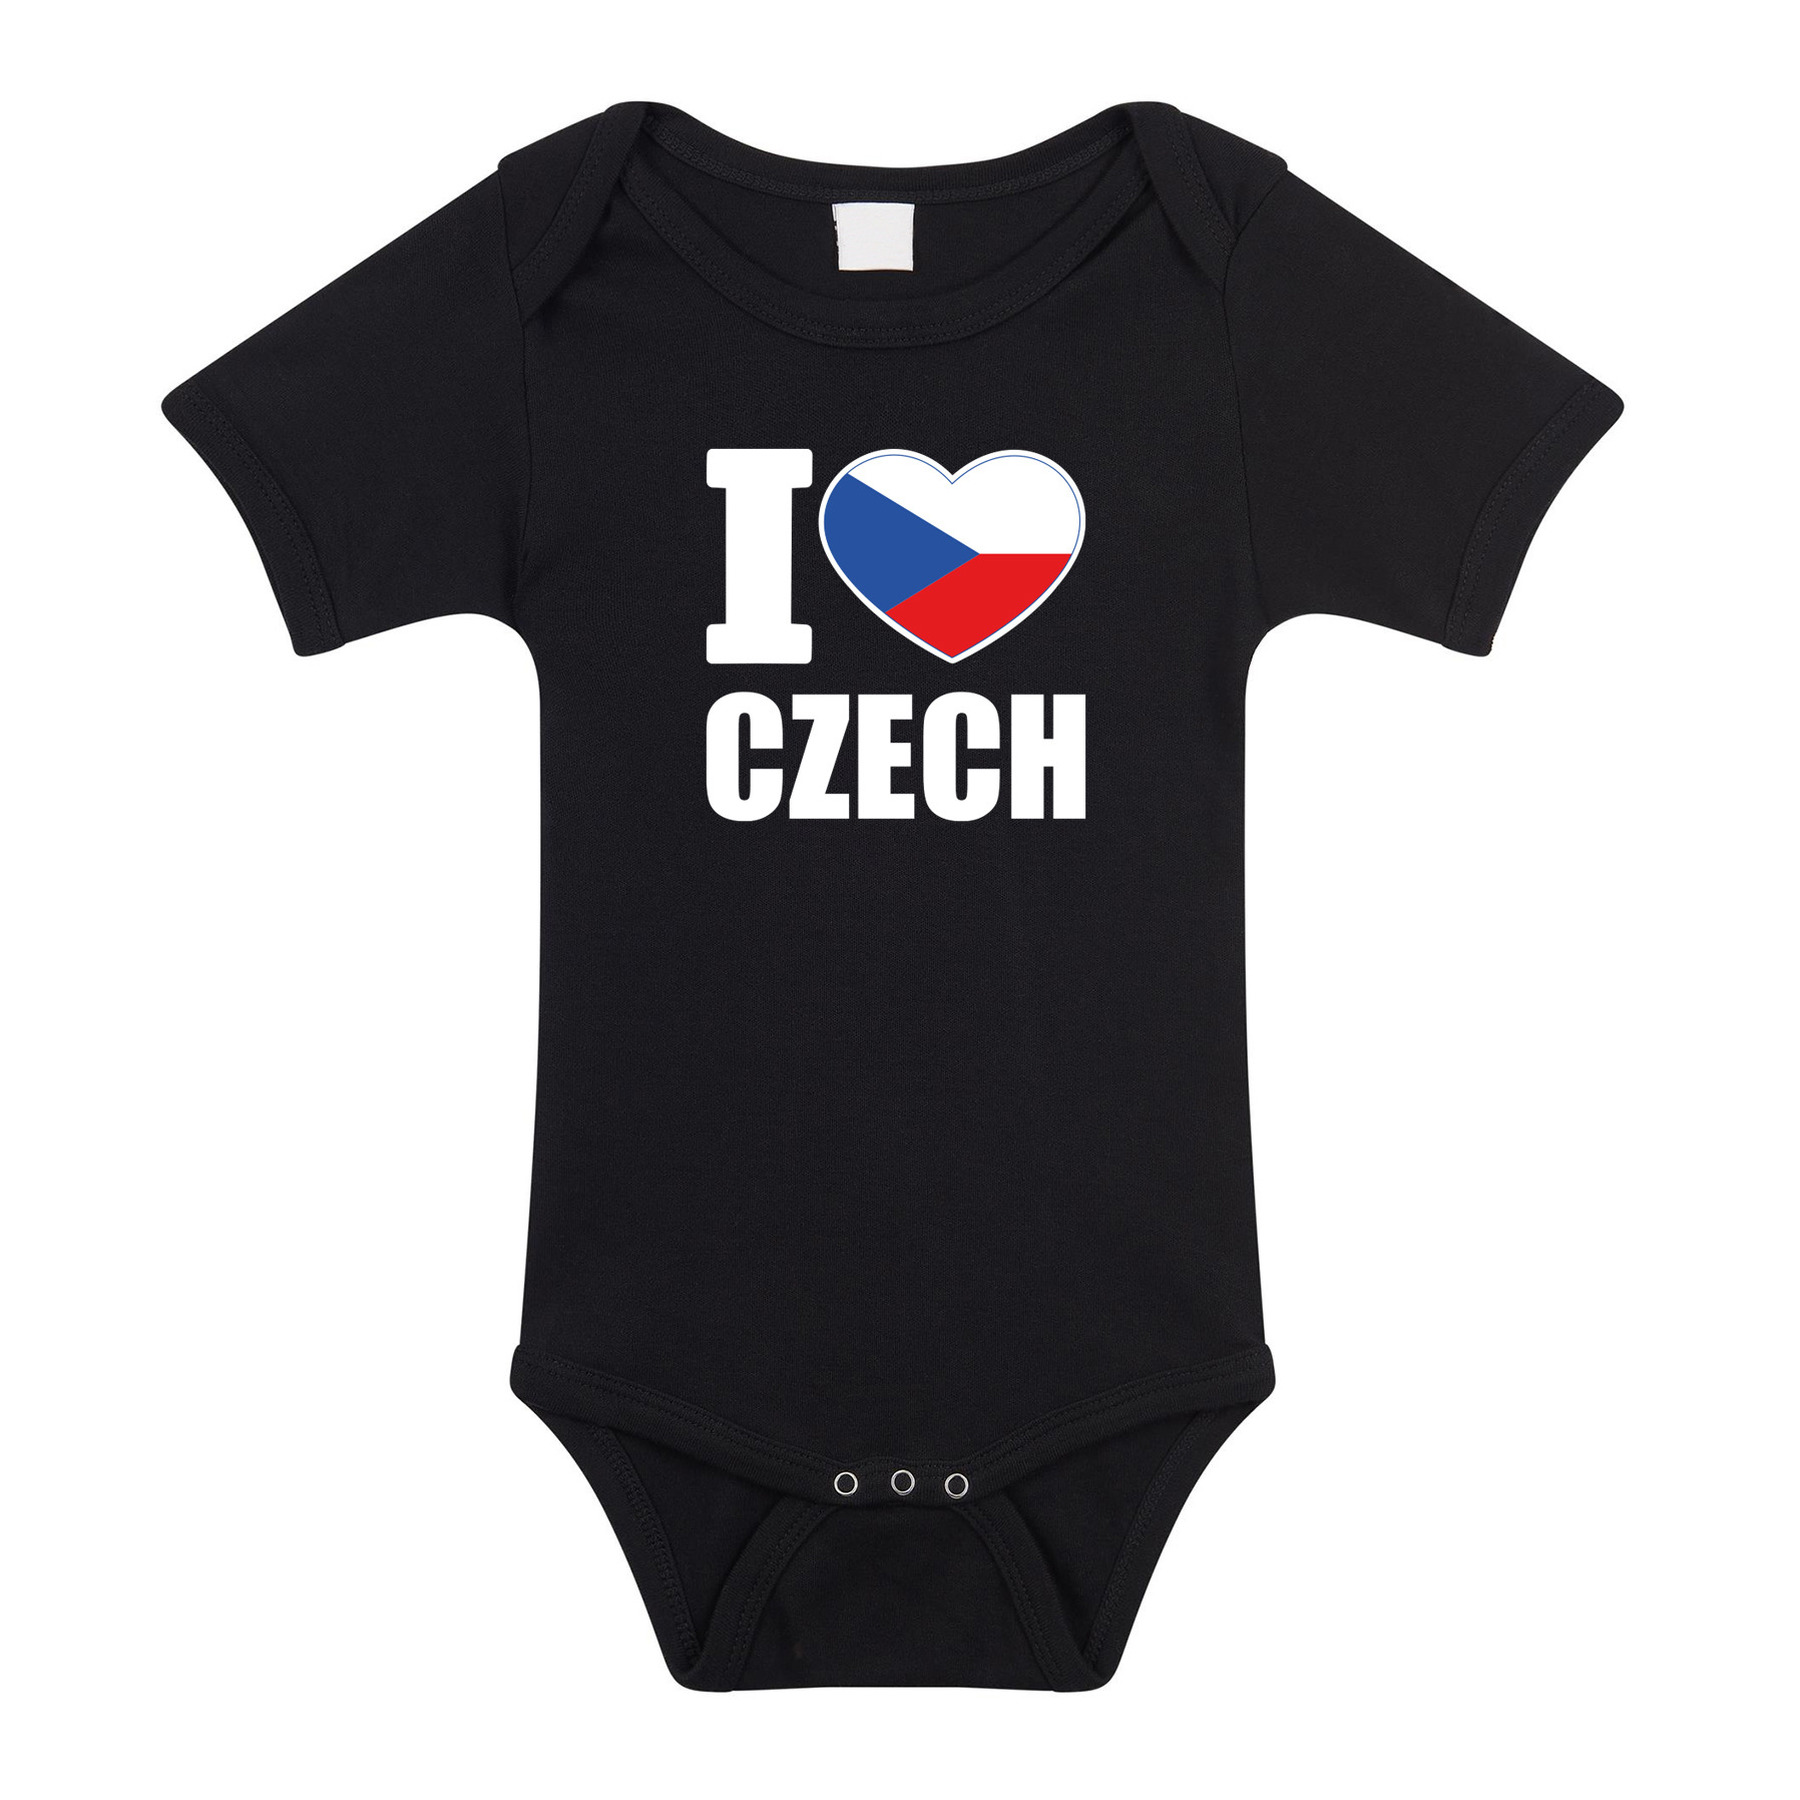 I love Czech baby rompertje zwart Tsjechie jongen-meisje